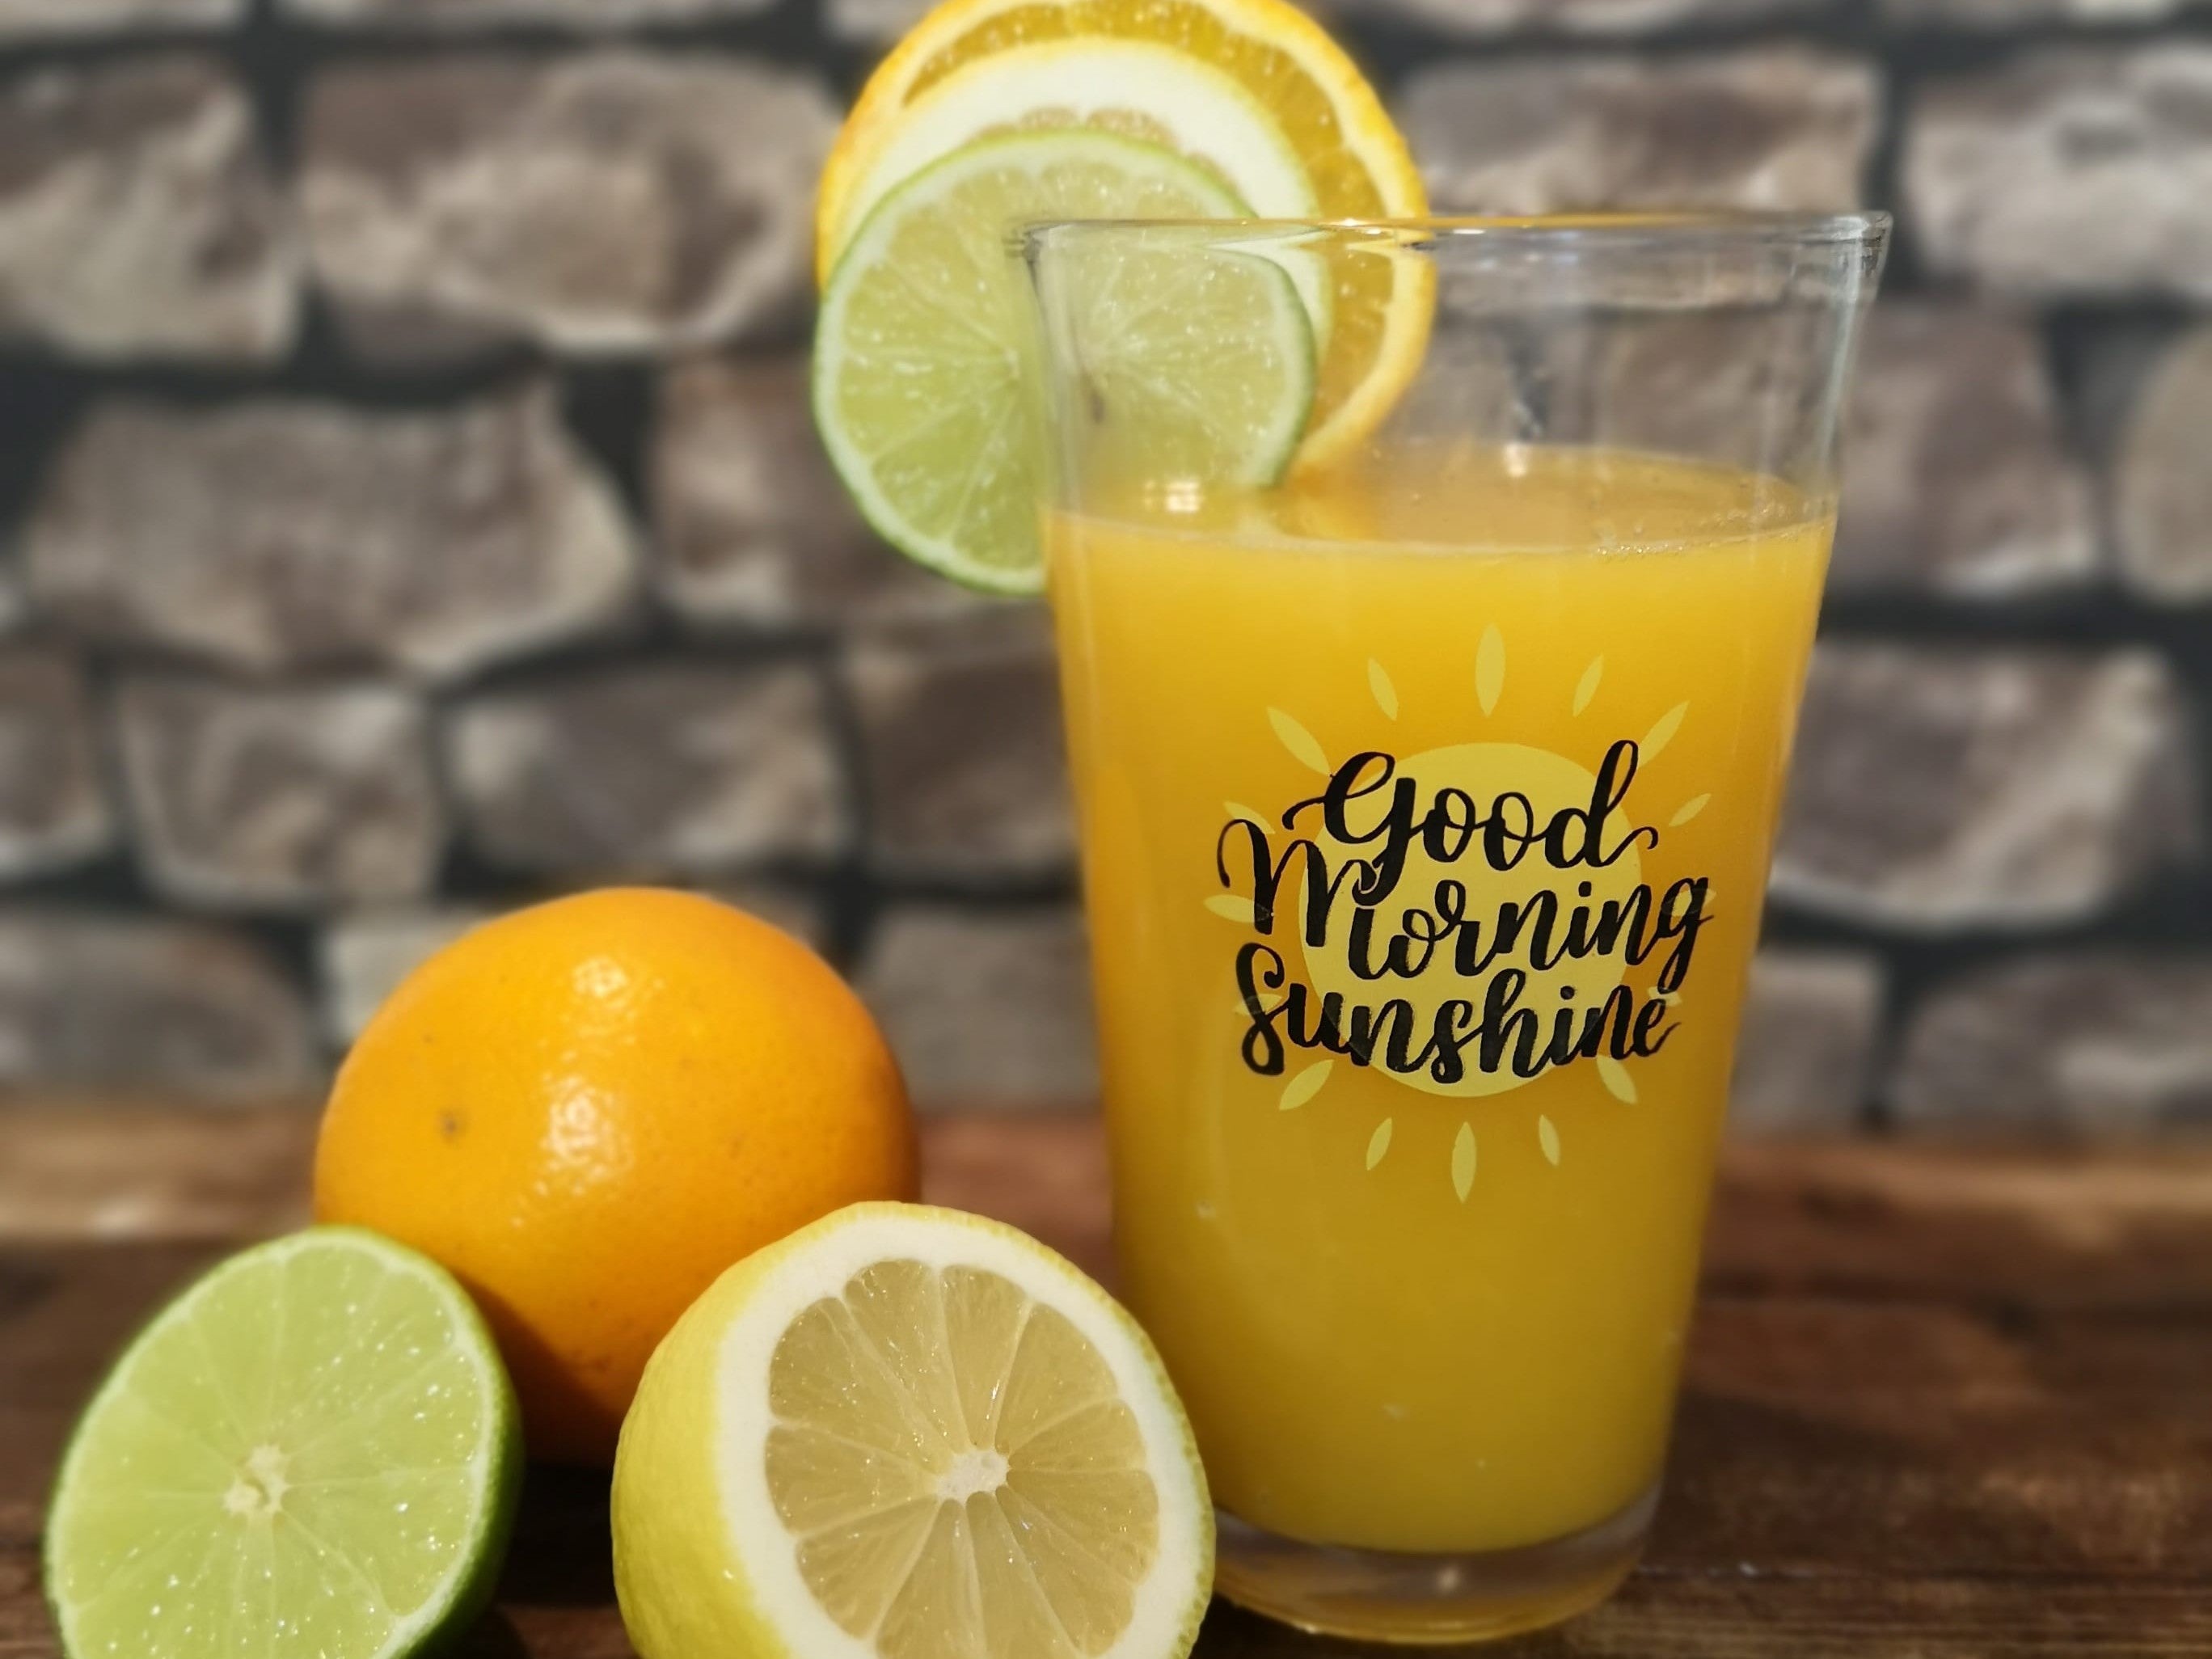 Power Juice aus der Citrus-Press! Mit extra viel #VitaminC aus sonnenverwöhnten #Zitrusfrüchten kommt der Powerjuice daher, für eine perfekte Abwehr gegen #Keime, schon am Morgen!   